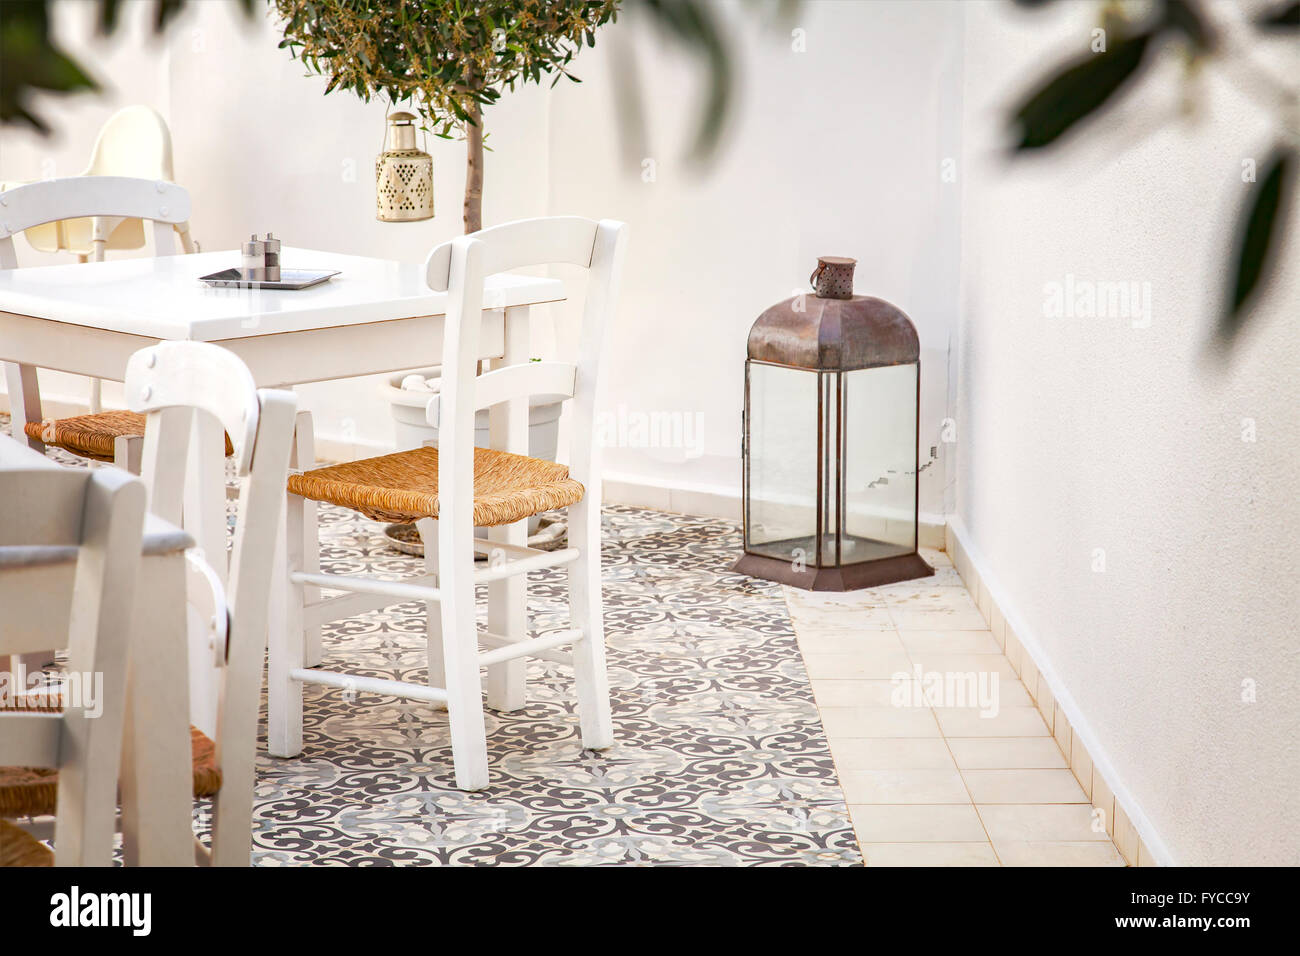 Bild von einem griechischen romantischen überdachten Innenhof. Stockfoto